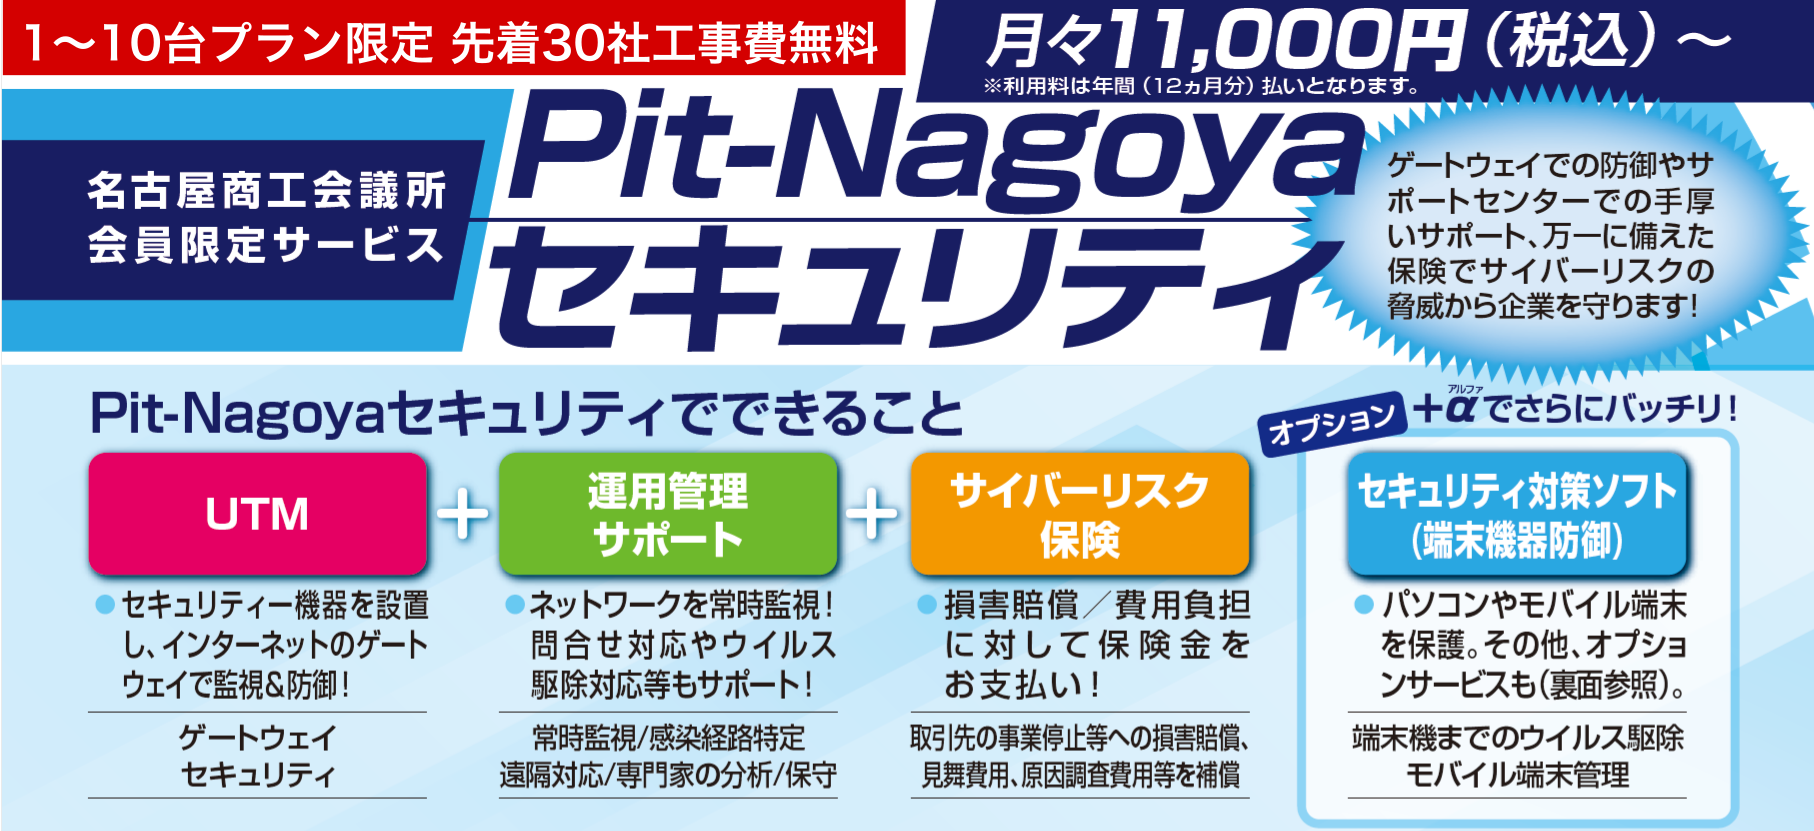 Pit-Nagoya Security